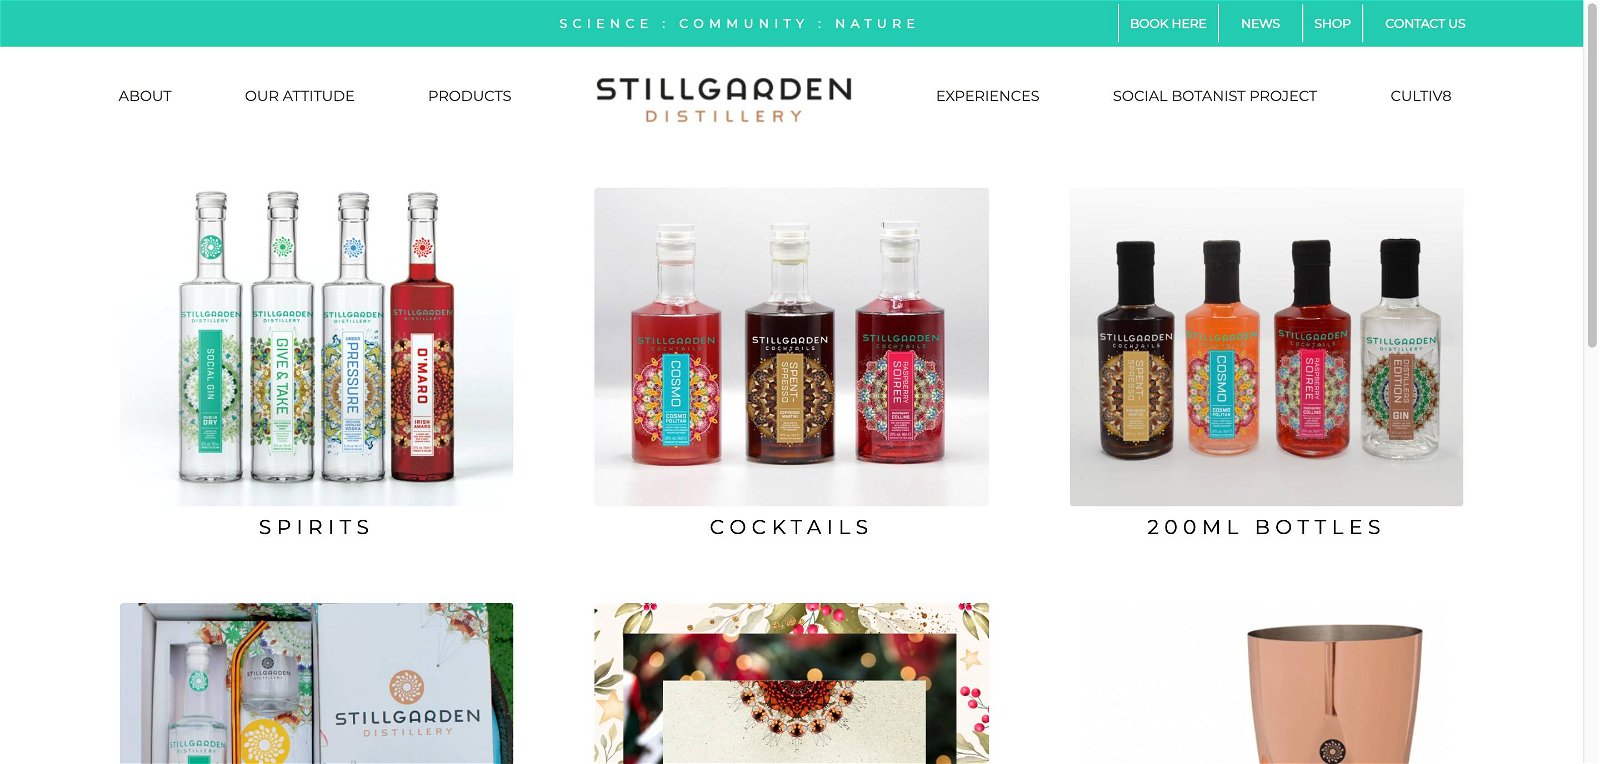 Stillgarden distillery.com